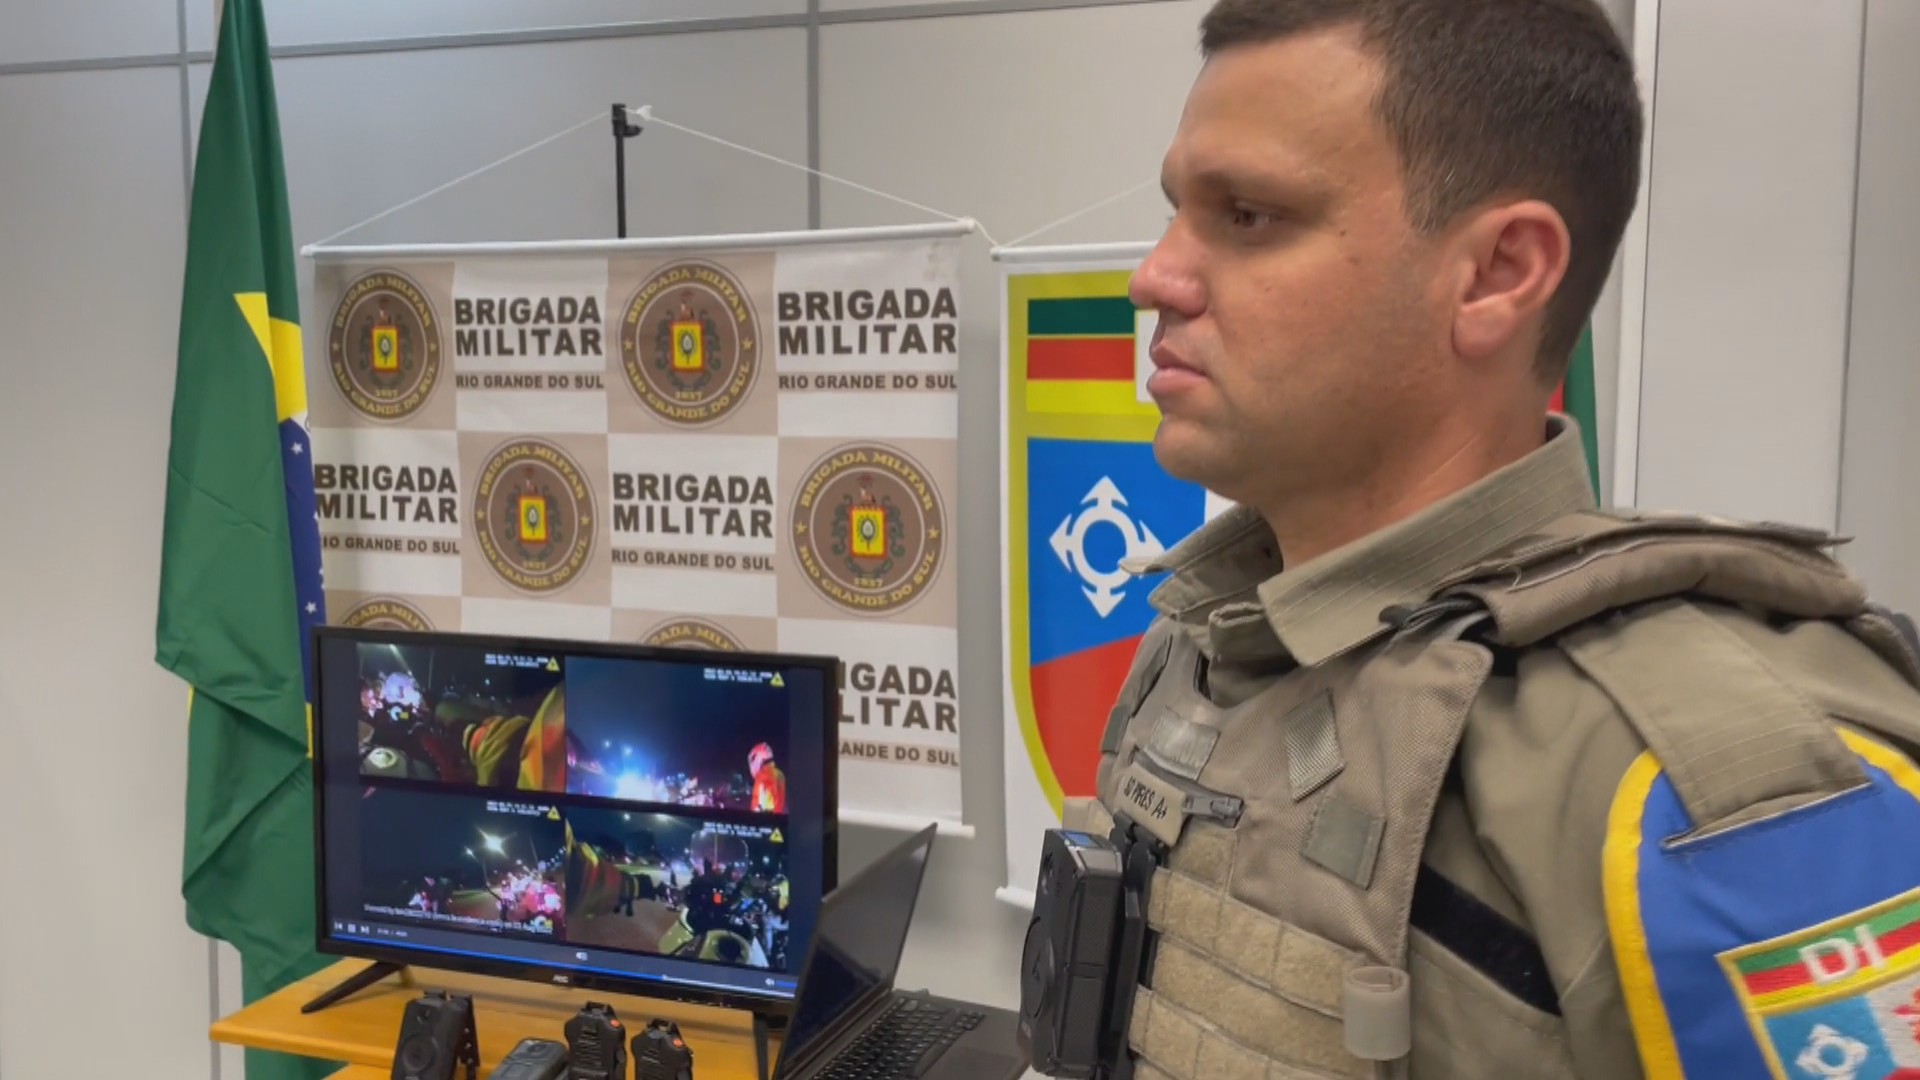 Policiais militares de Porto Alegre devem contar com câmeras no uniforme até o final de 2022, diz BM